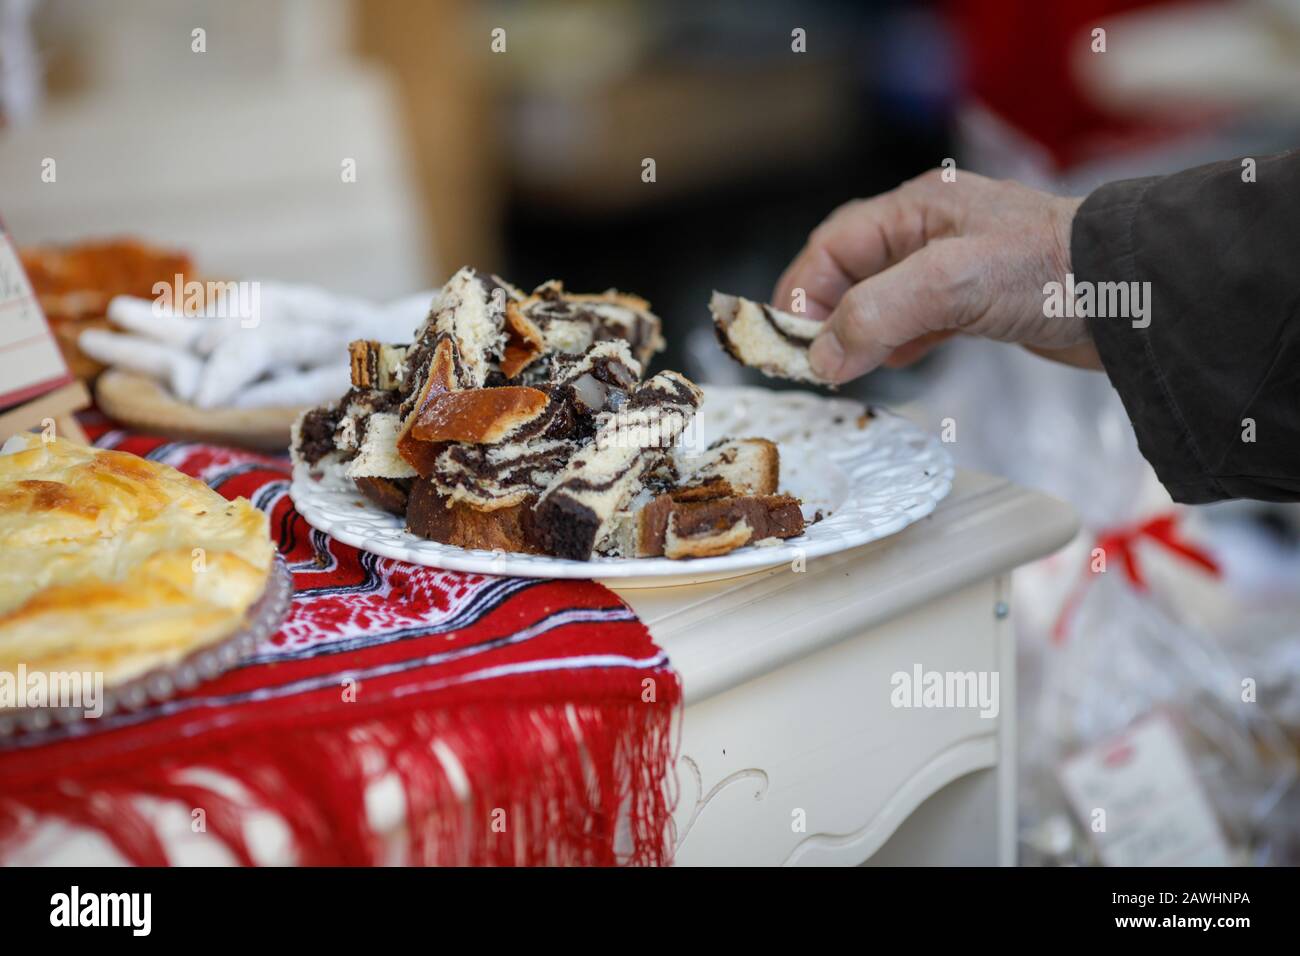 Profondità di campo poco profonda (fuoco selettivo) immagine con un uomo che prende un pezzo di coconac, dolce tradizionale rumeno durante l'inverno, da un piatto. Foto Stock